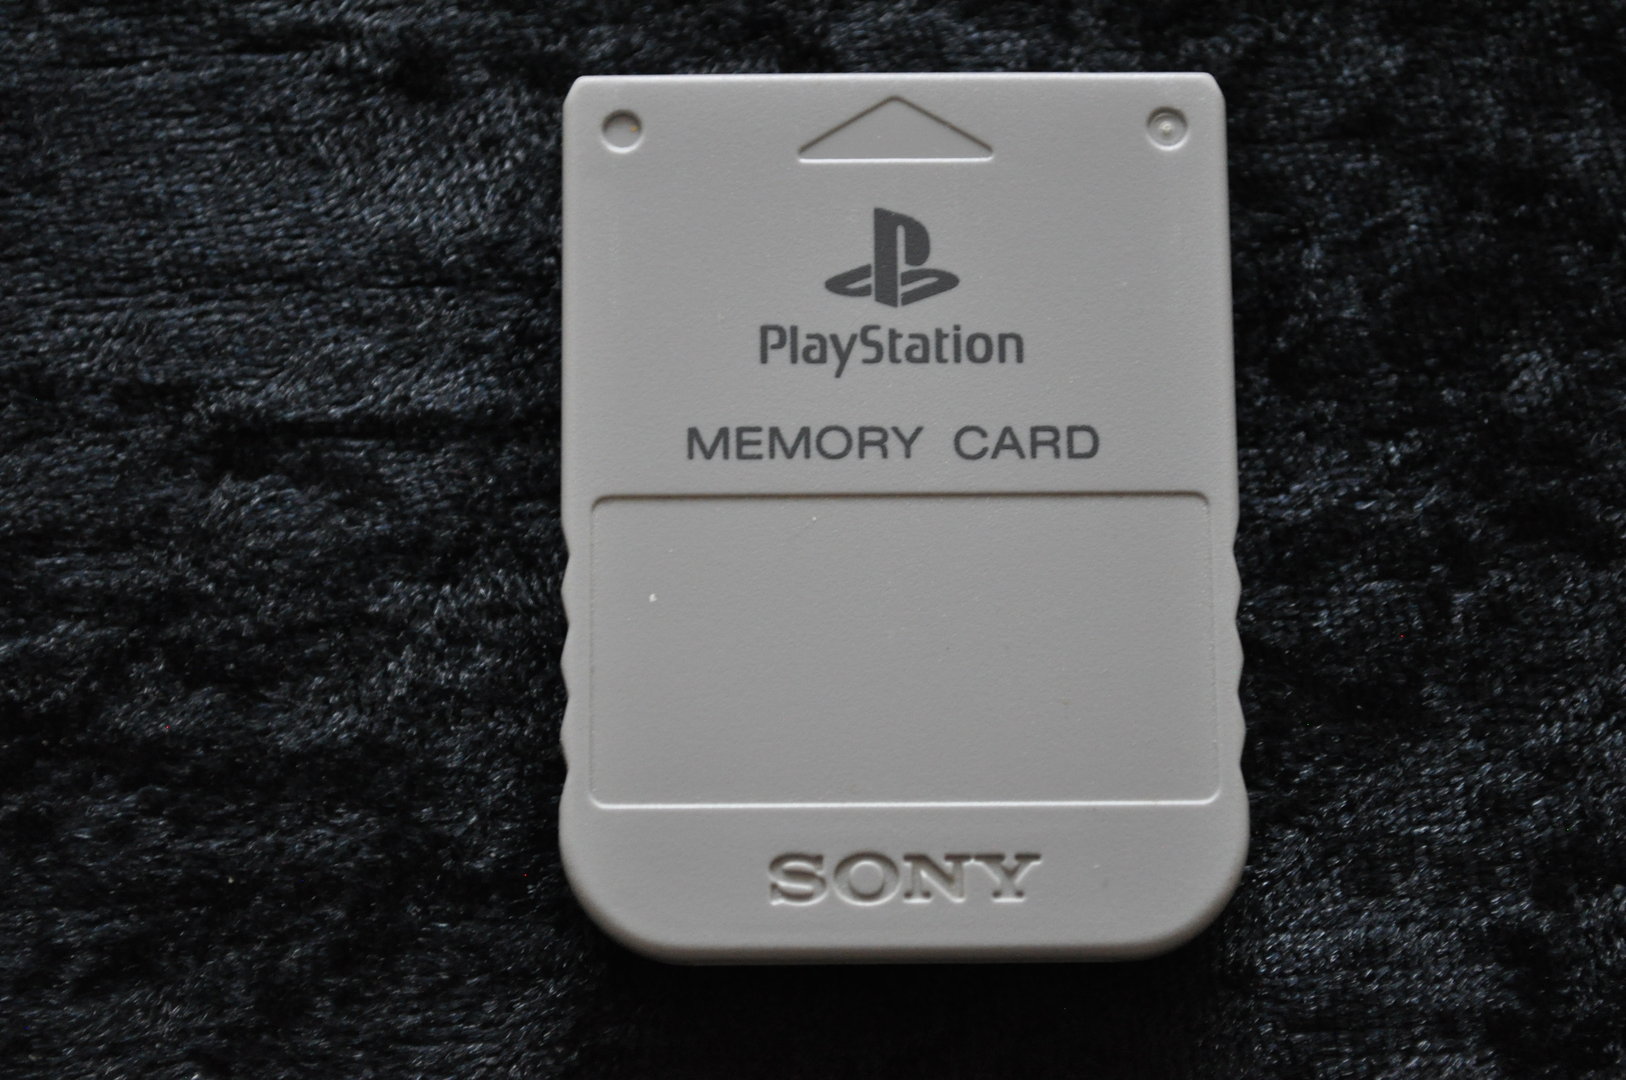 6 curiosidades sobre o Memory Card, o clássico acessório do PS1 e PS2